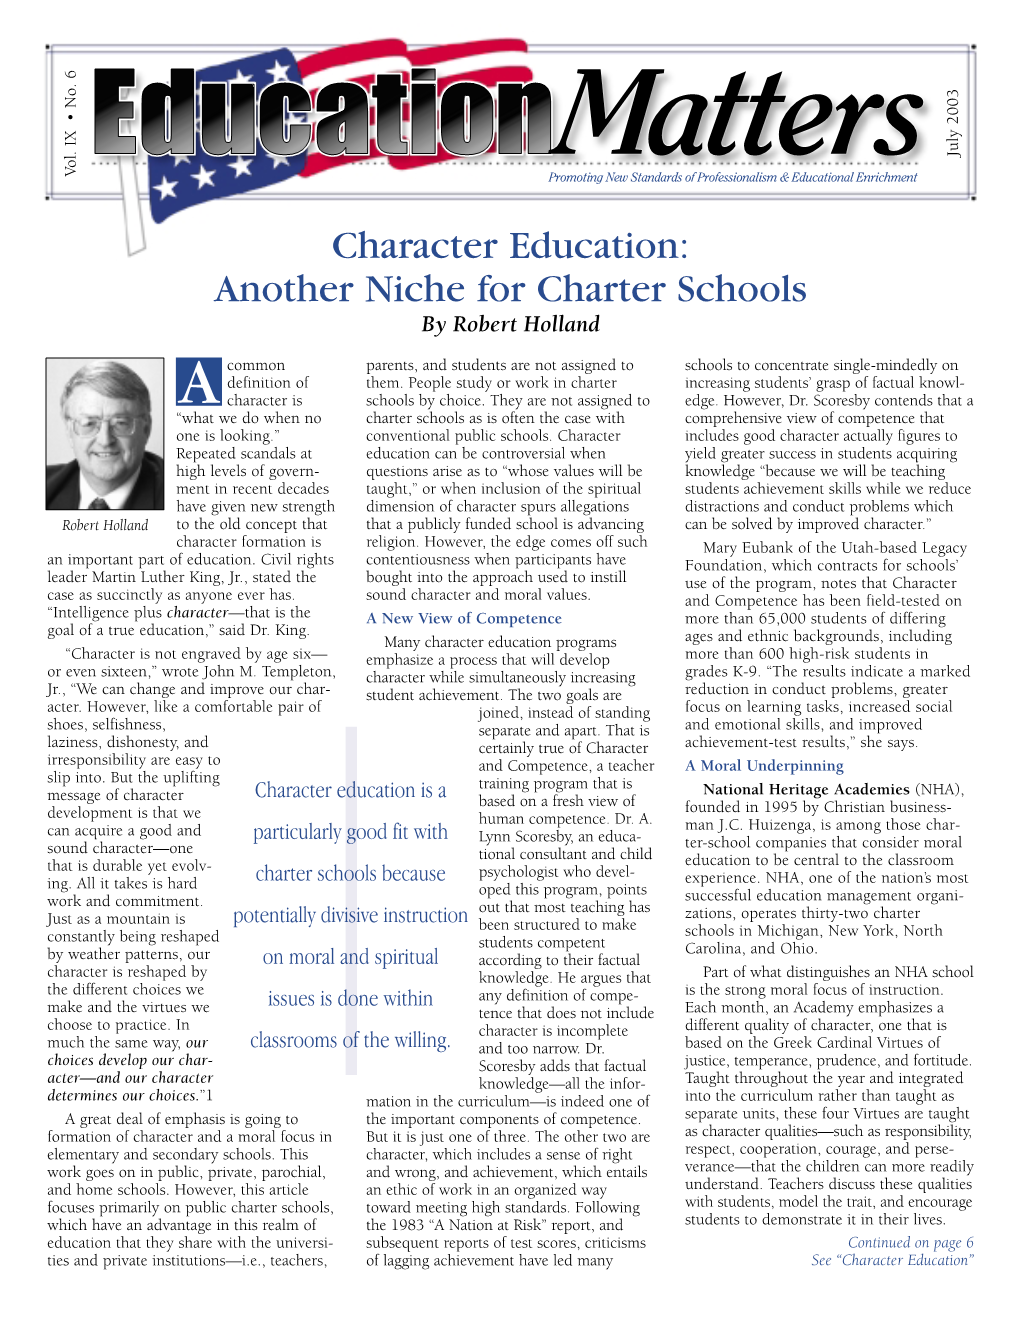 Education Matters (July 2003)